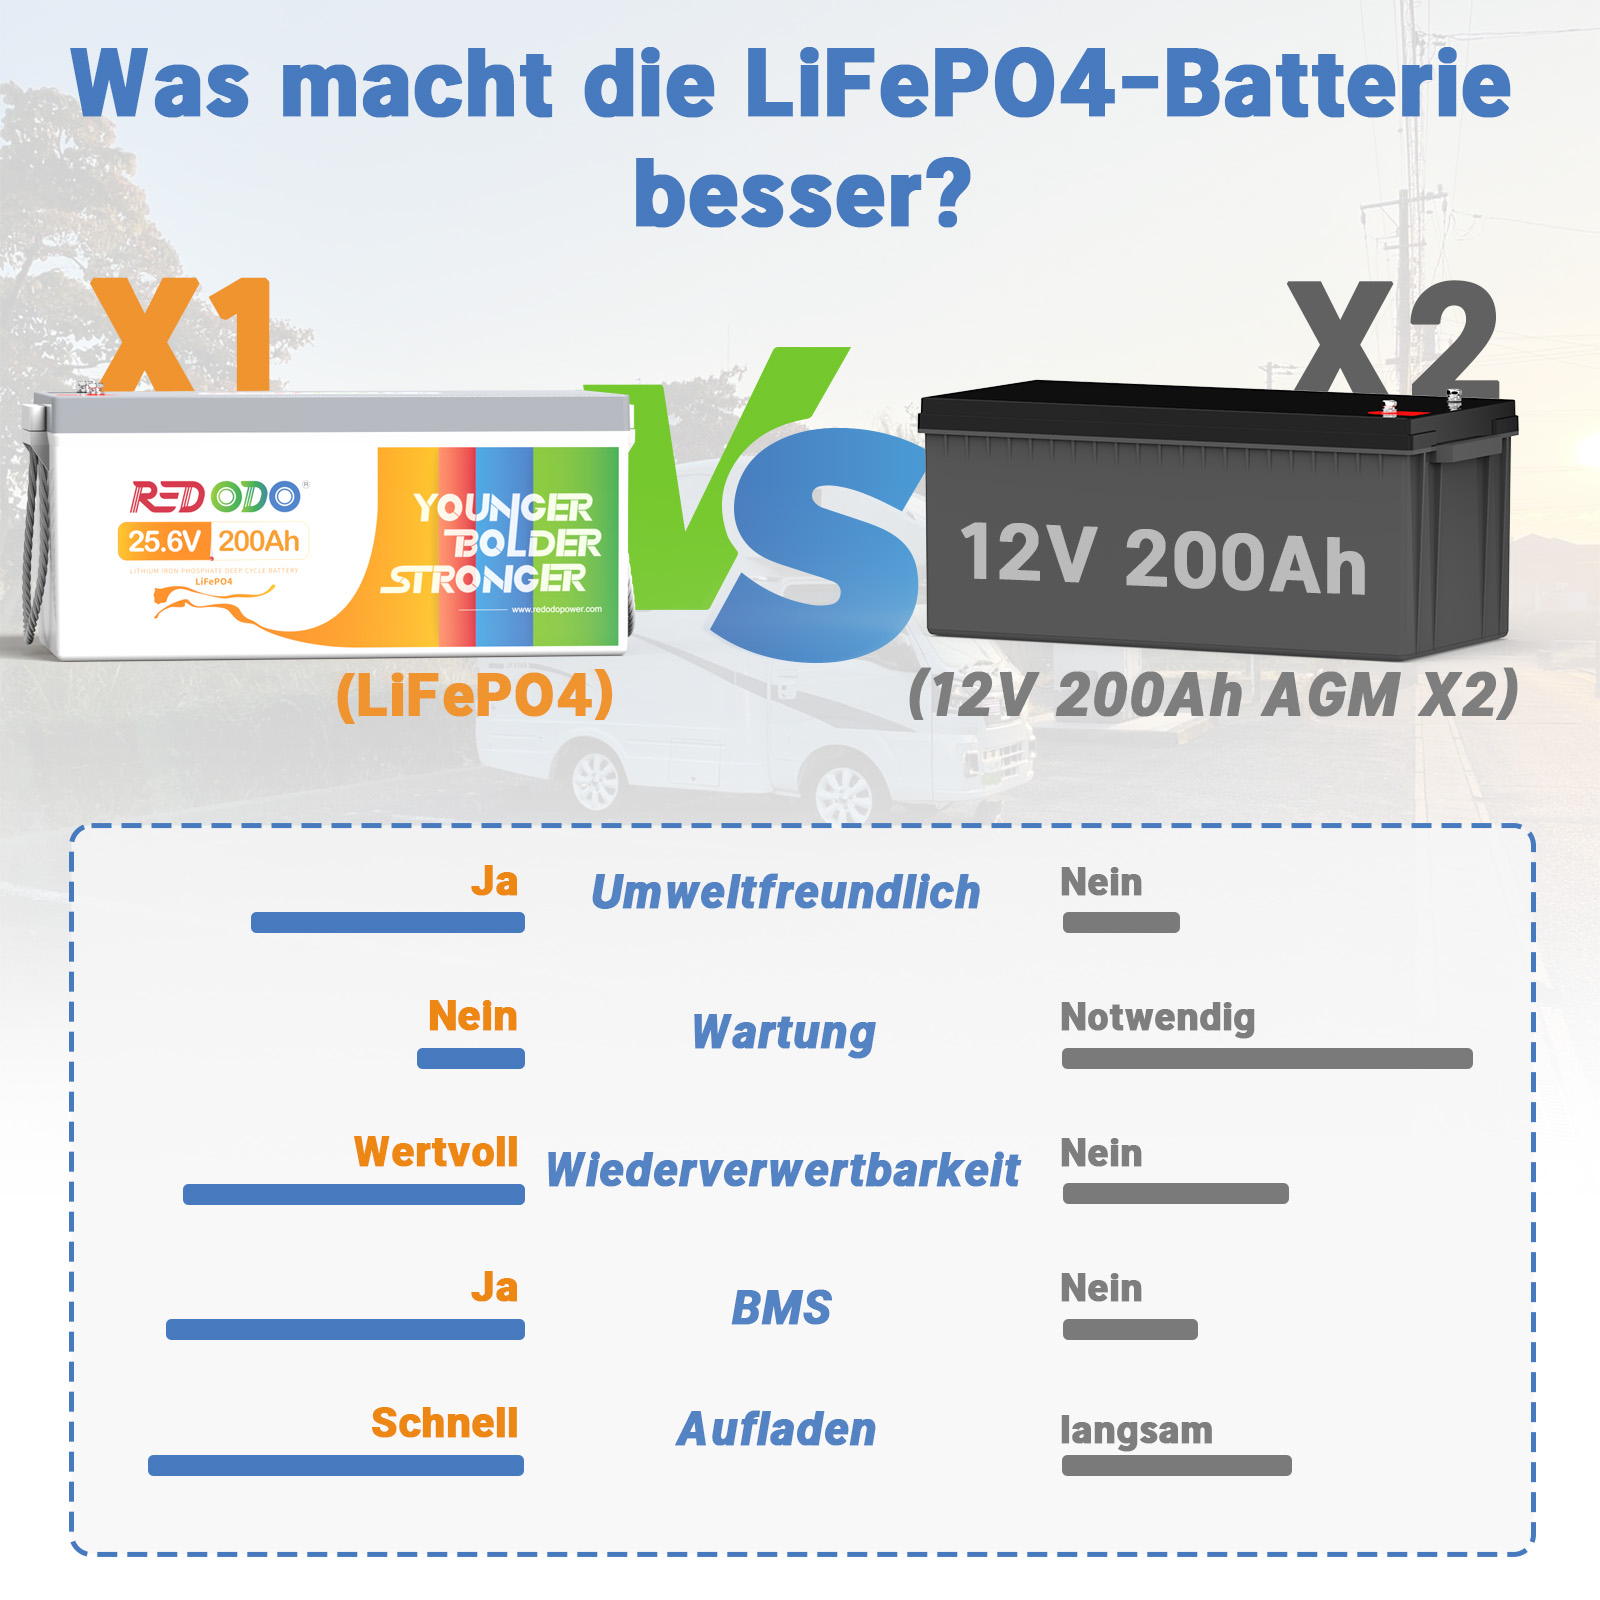 Befreiung von 19% MwSt - Redodo 24V 200Ah LiFePO4 Batterie | 5,12kWh & 5,12kW - nur für Wohngebäude und Deutschland